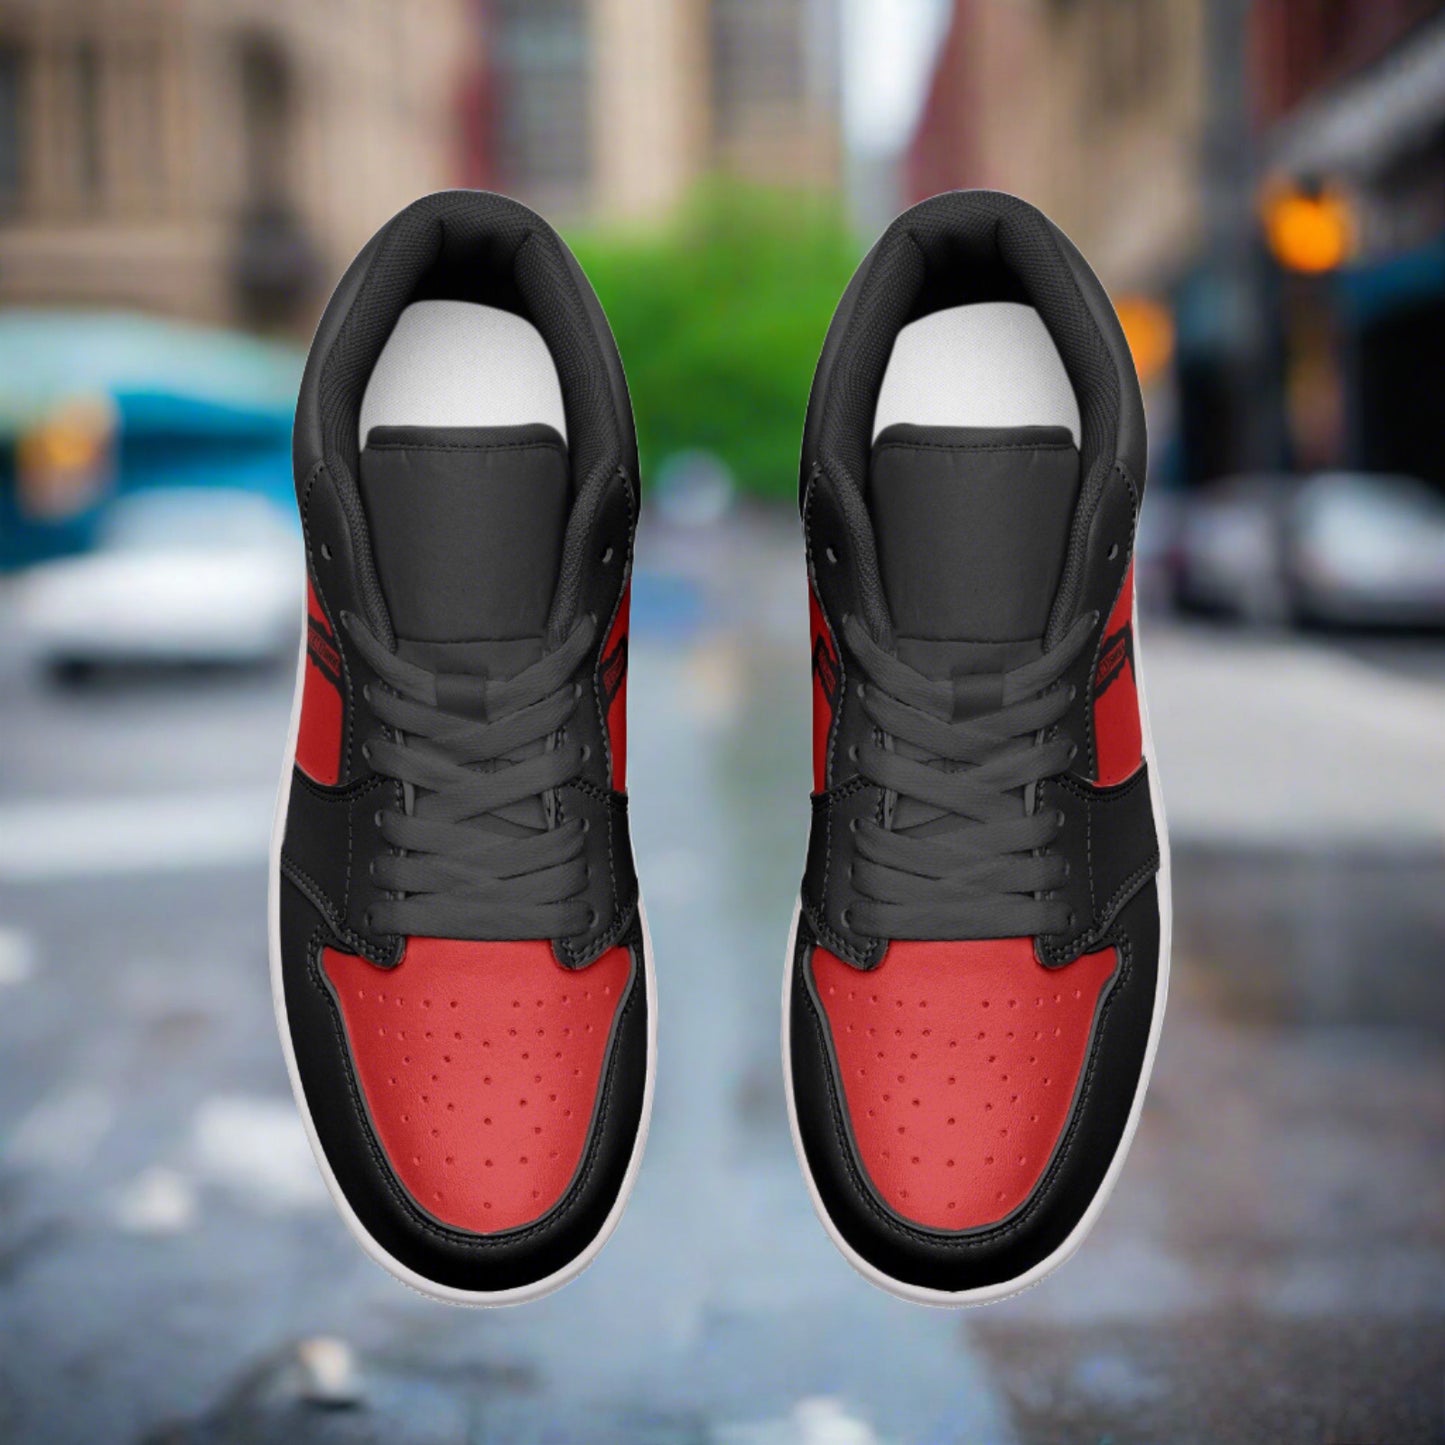 Freaky Shoes® 紅色 & 黑色男女通用低筒皮革運動鞋